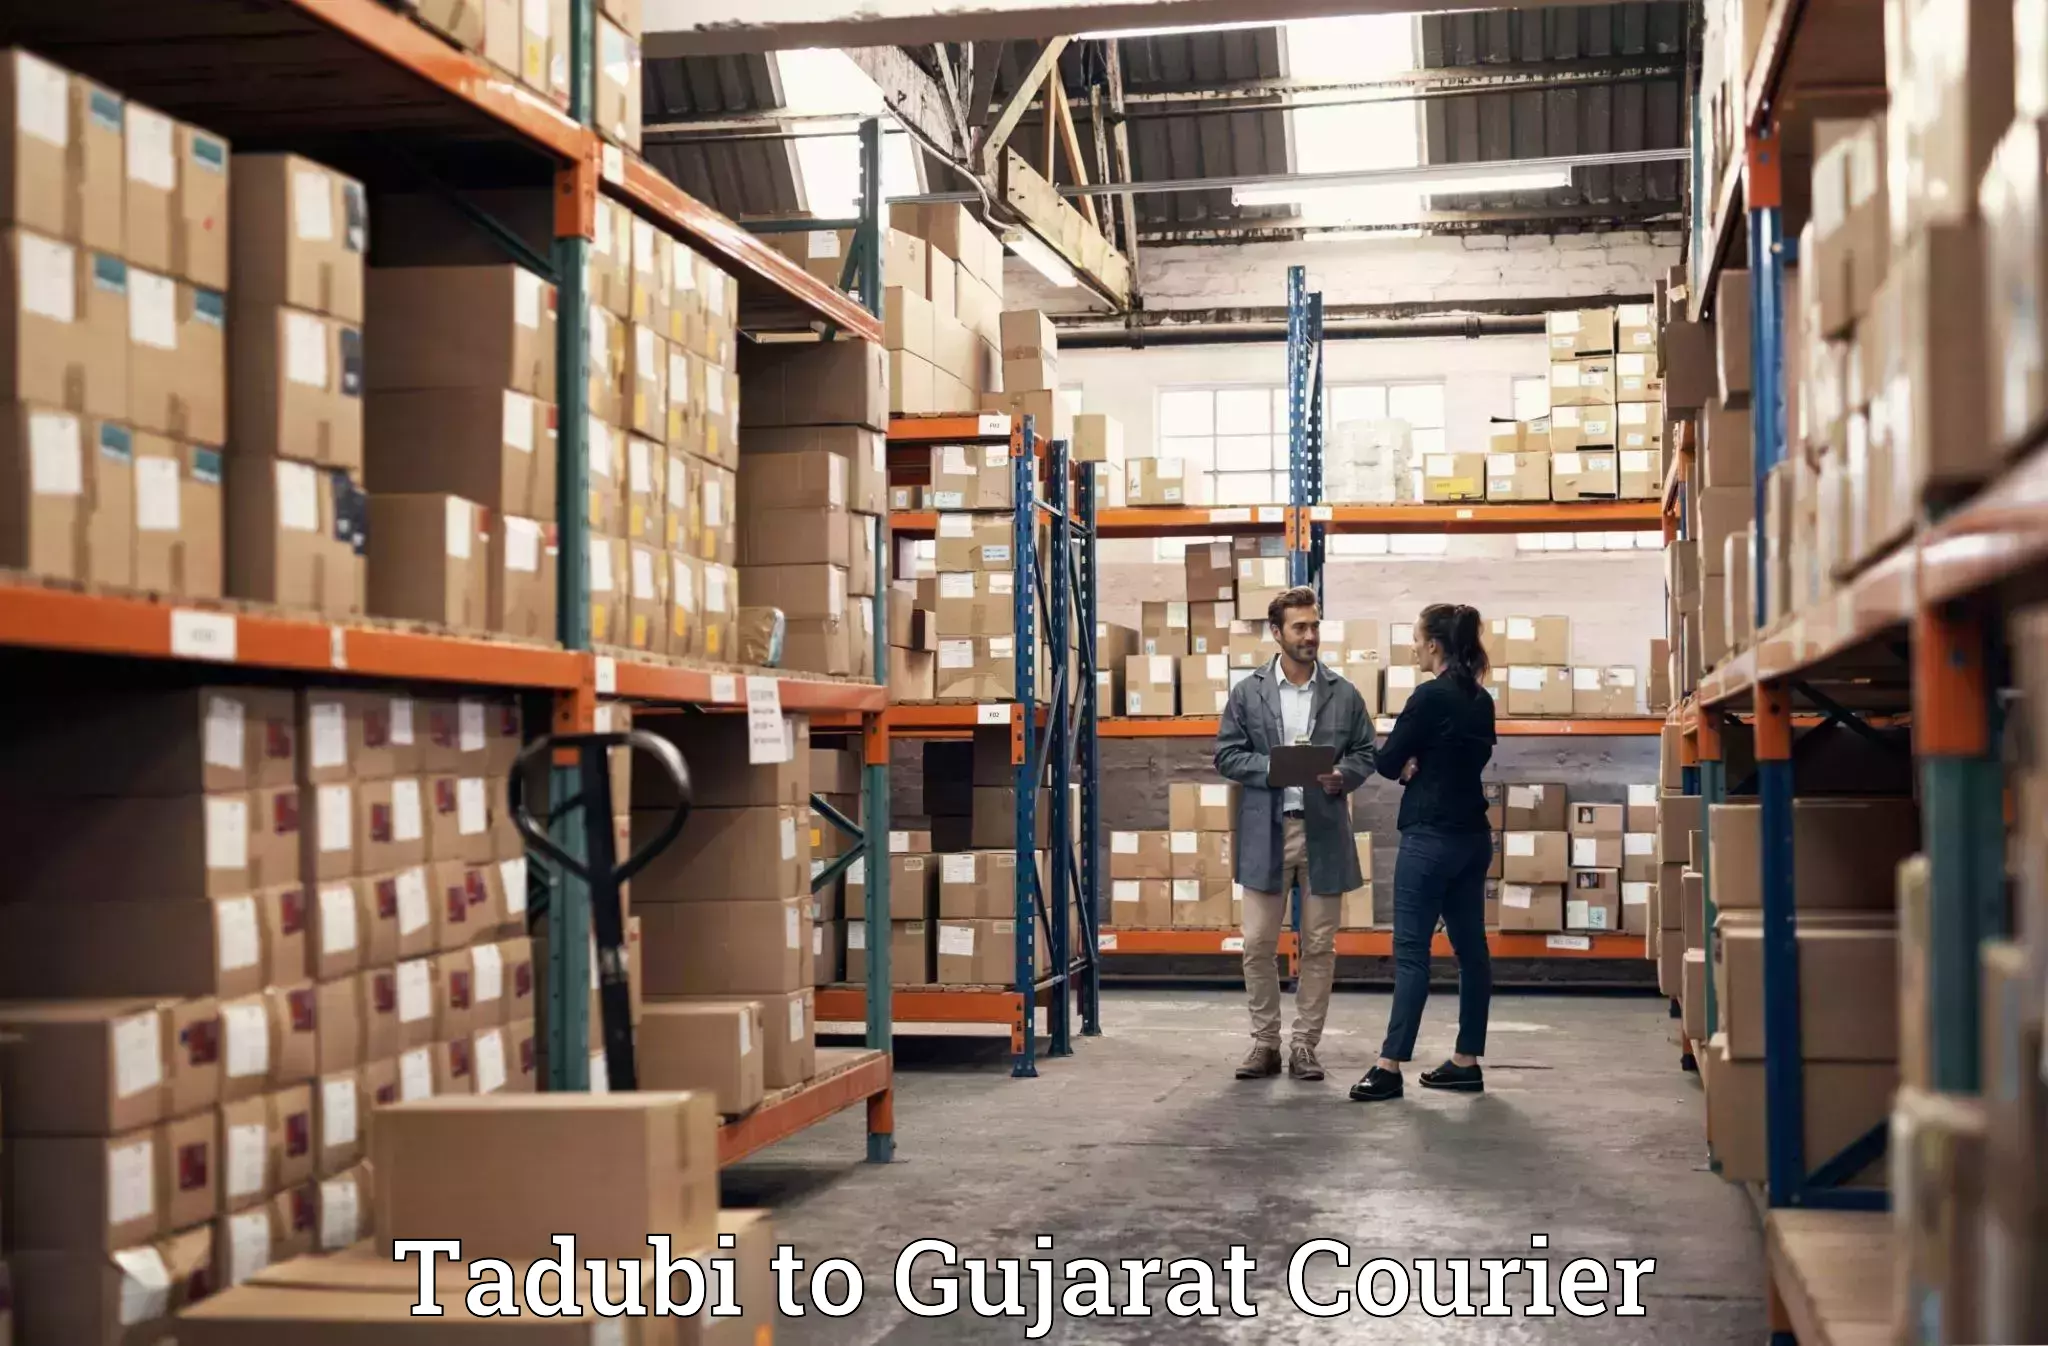 Baggage shipping experience Tadubi to Karjan